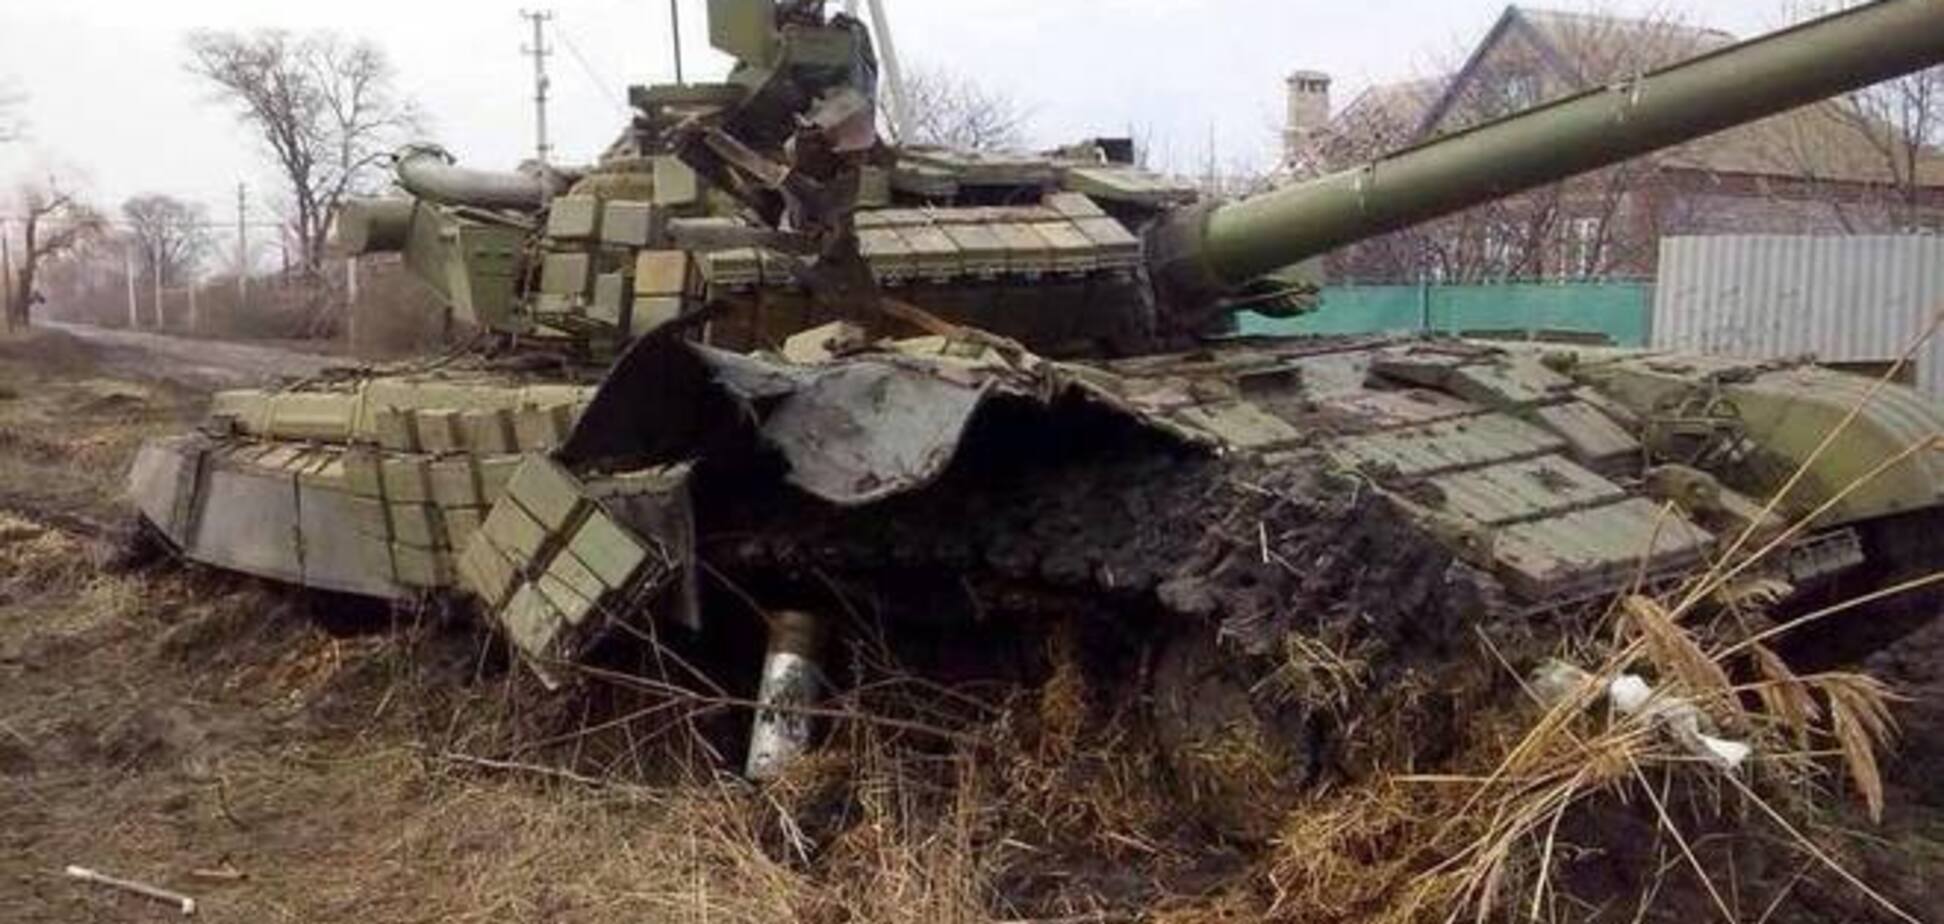 Бойцы АТО уничтожили под Мариуполем танк и 8 российских военных: опубликовано фото